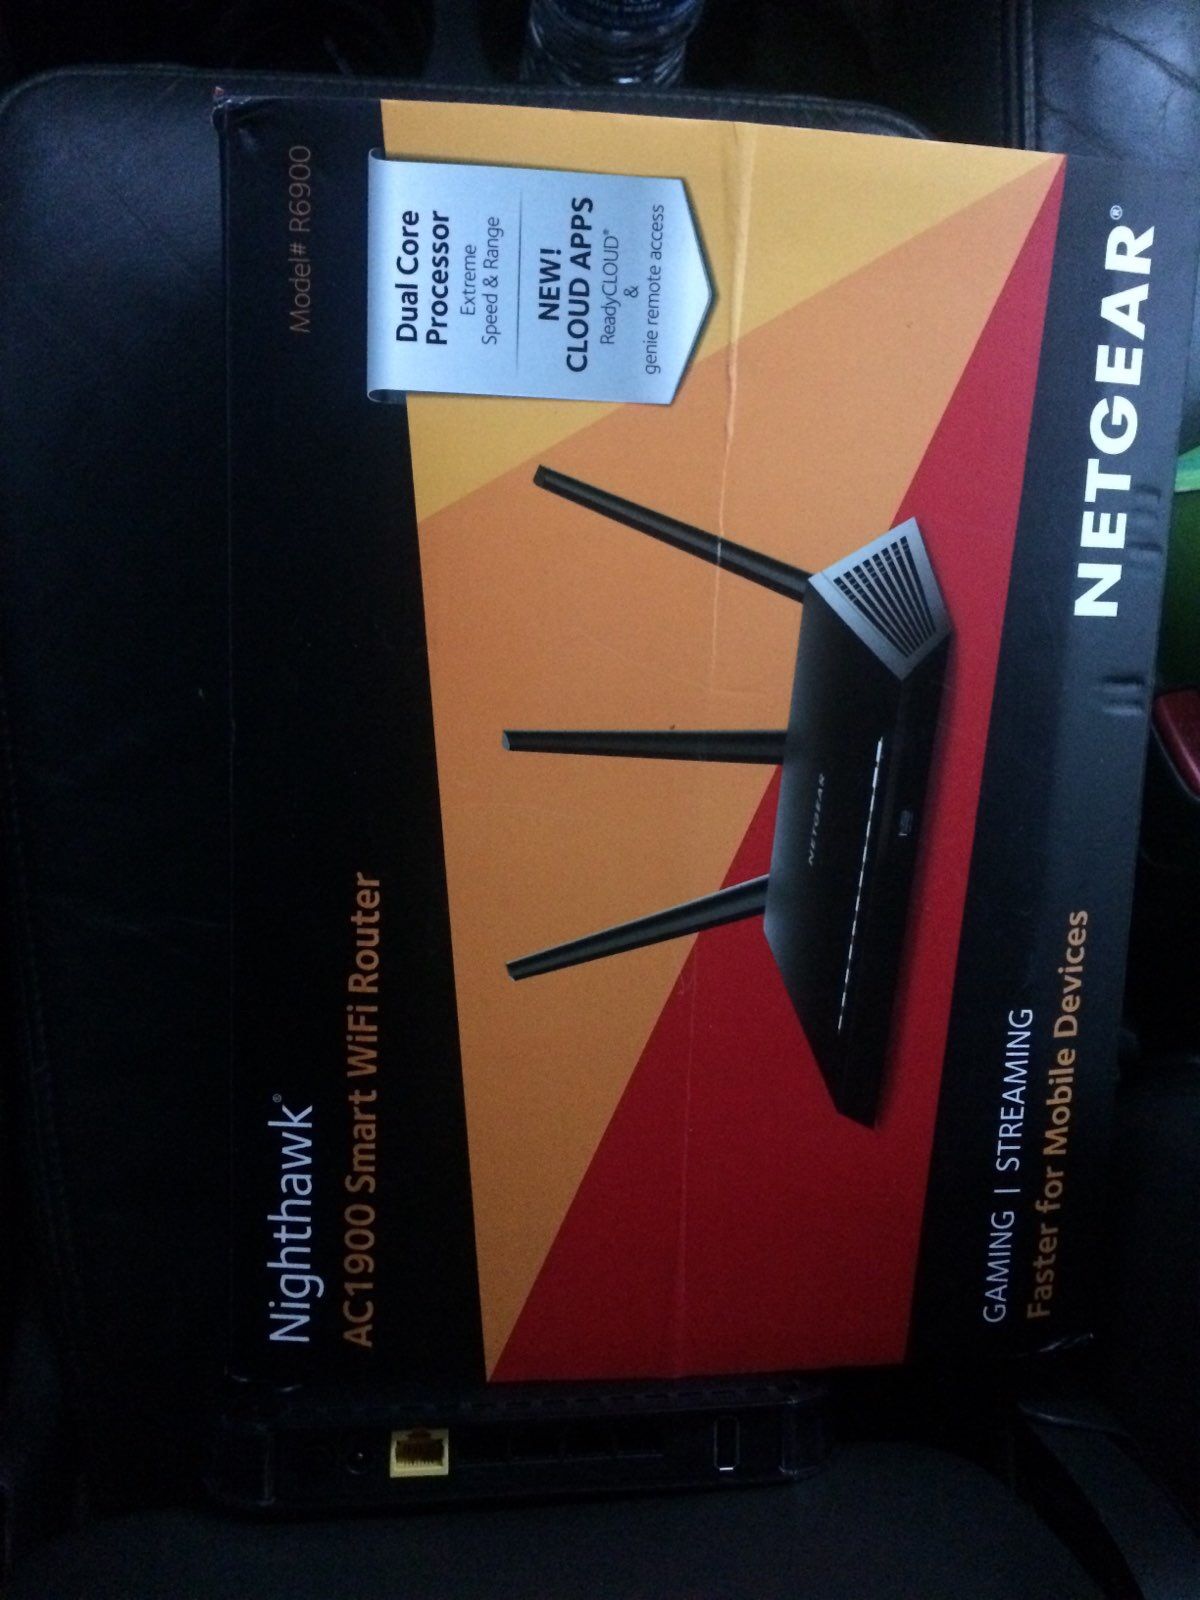 NetGear nighthawk router